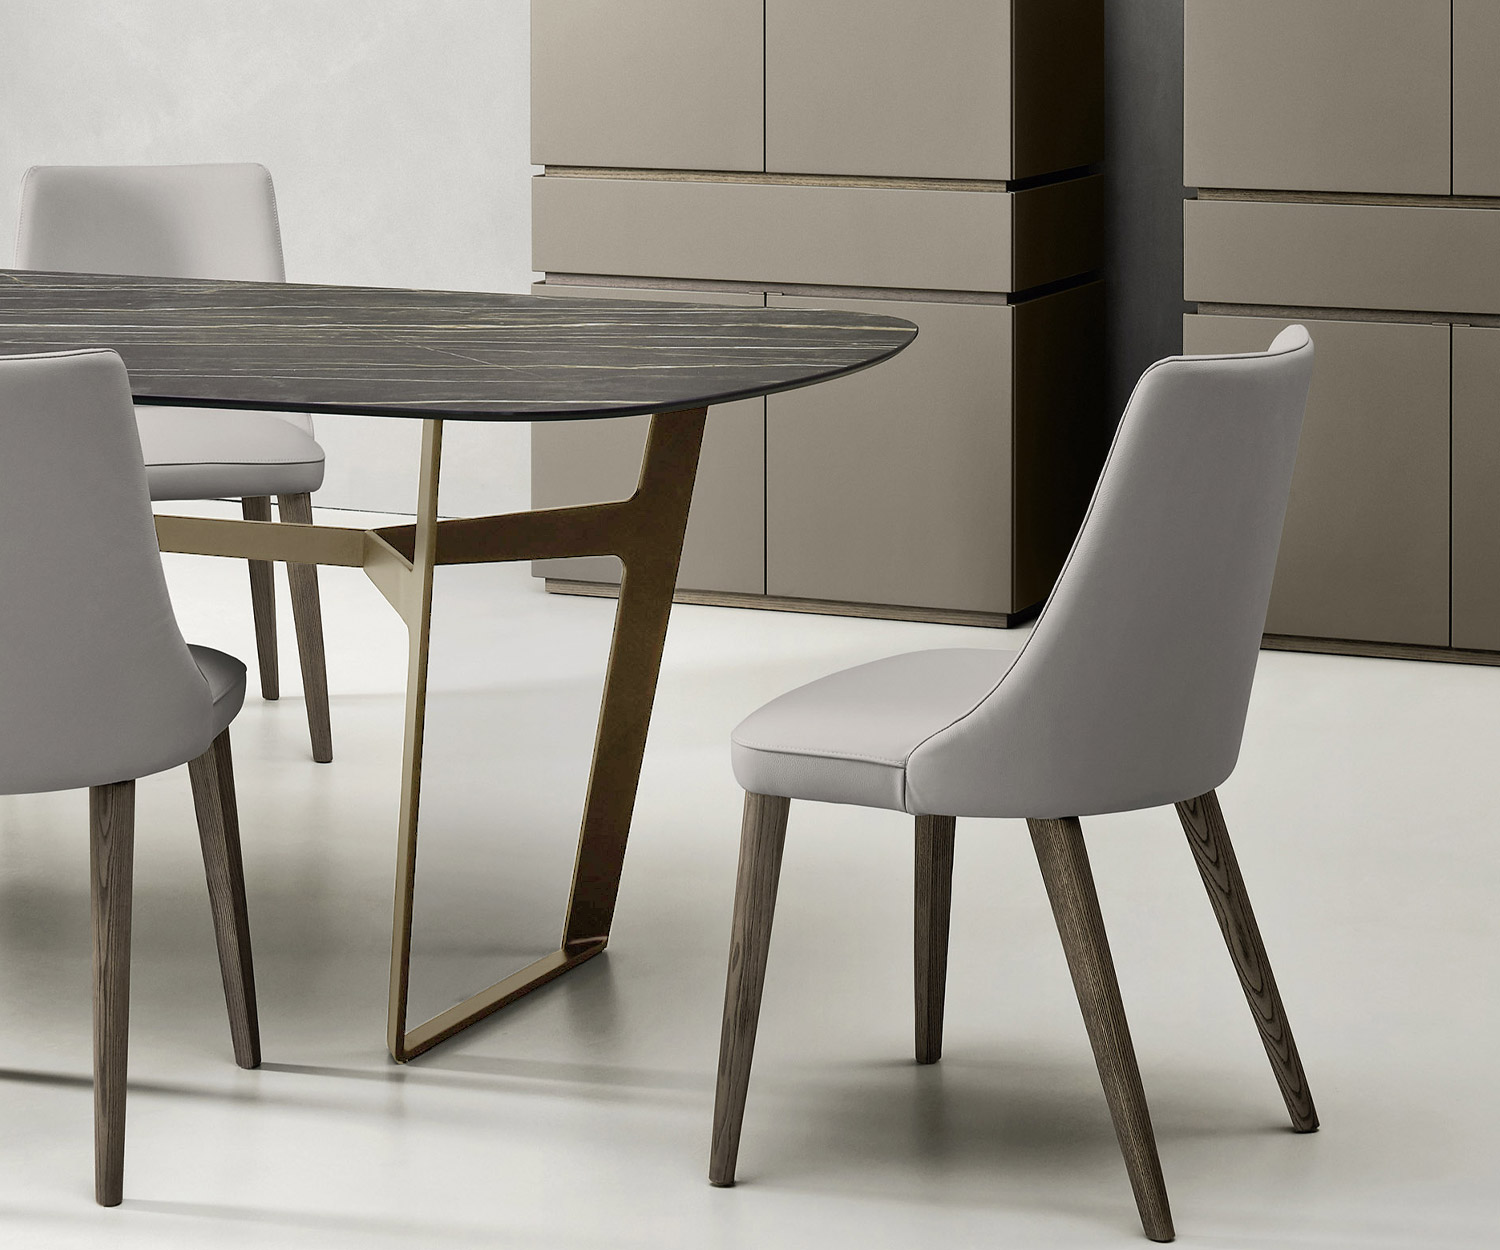 Livitalia Obi design tafel in detail metalen frame in bruin met eettafelstoelen voor 2 highboards